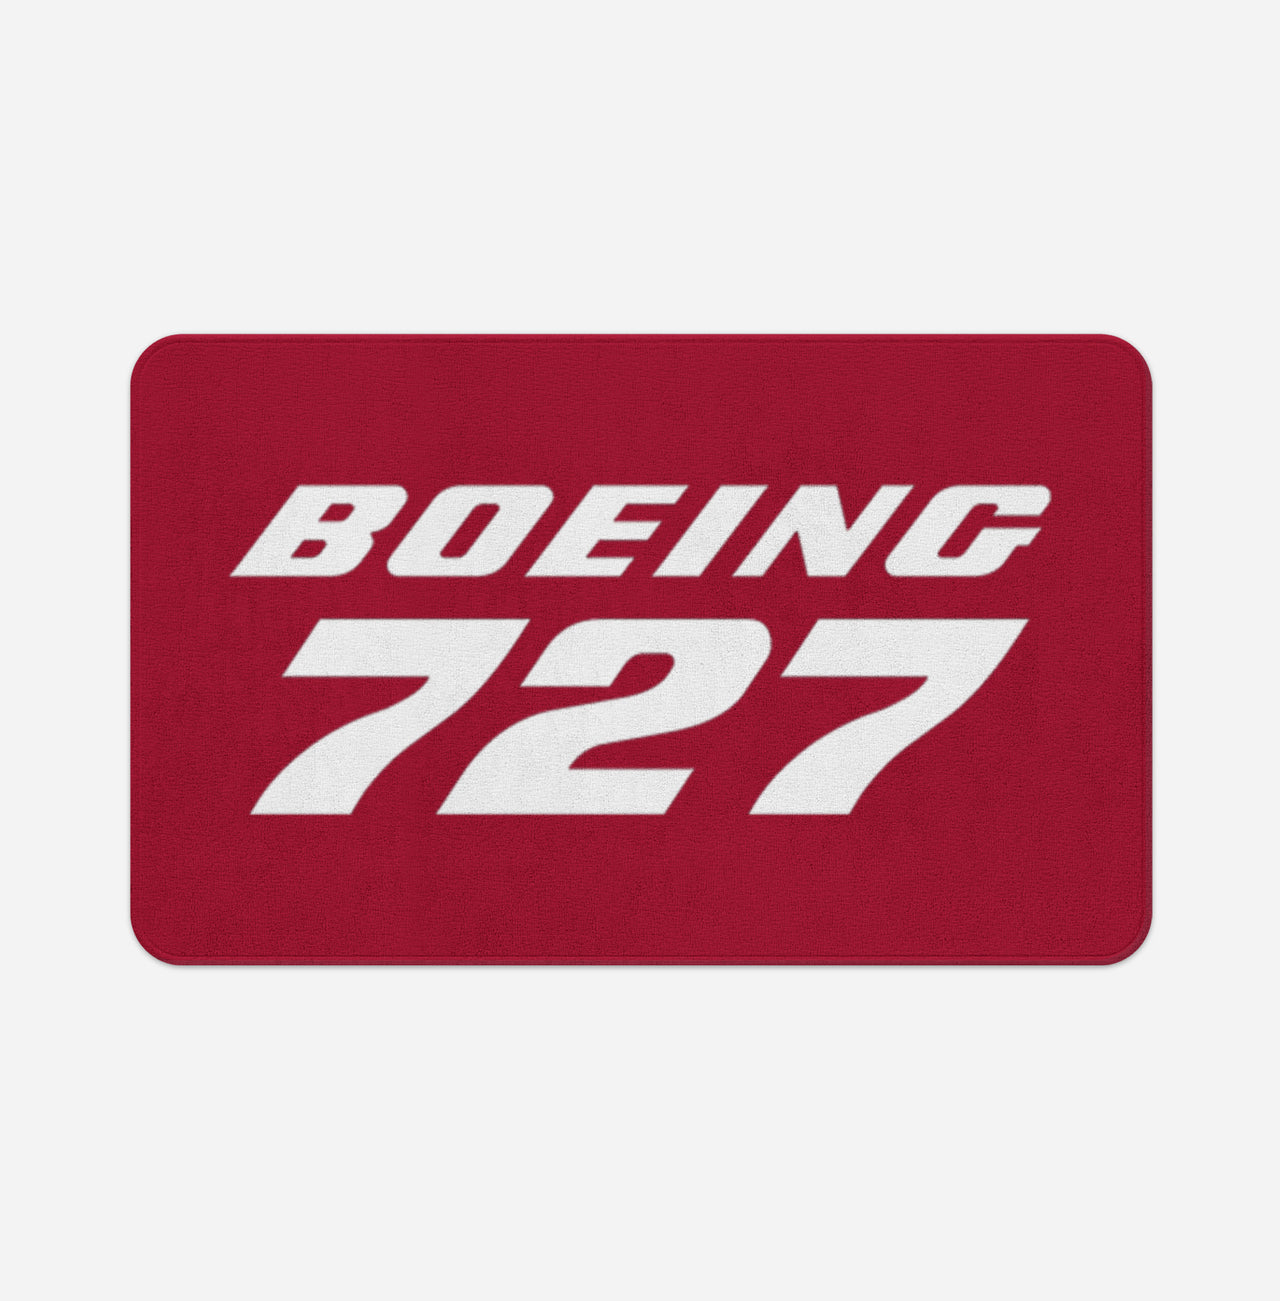 Boeing 727 & Text Designed Bath Mats